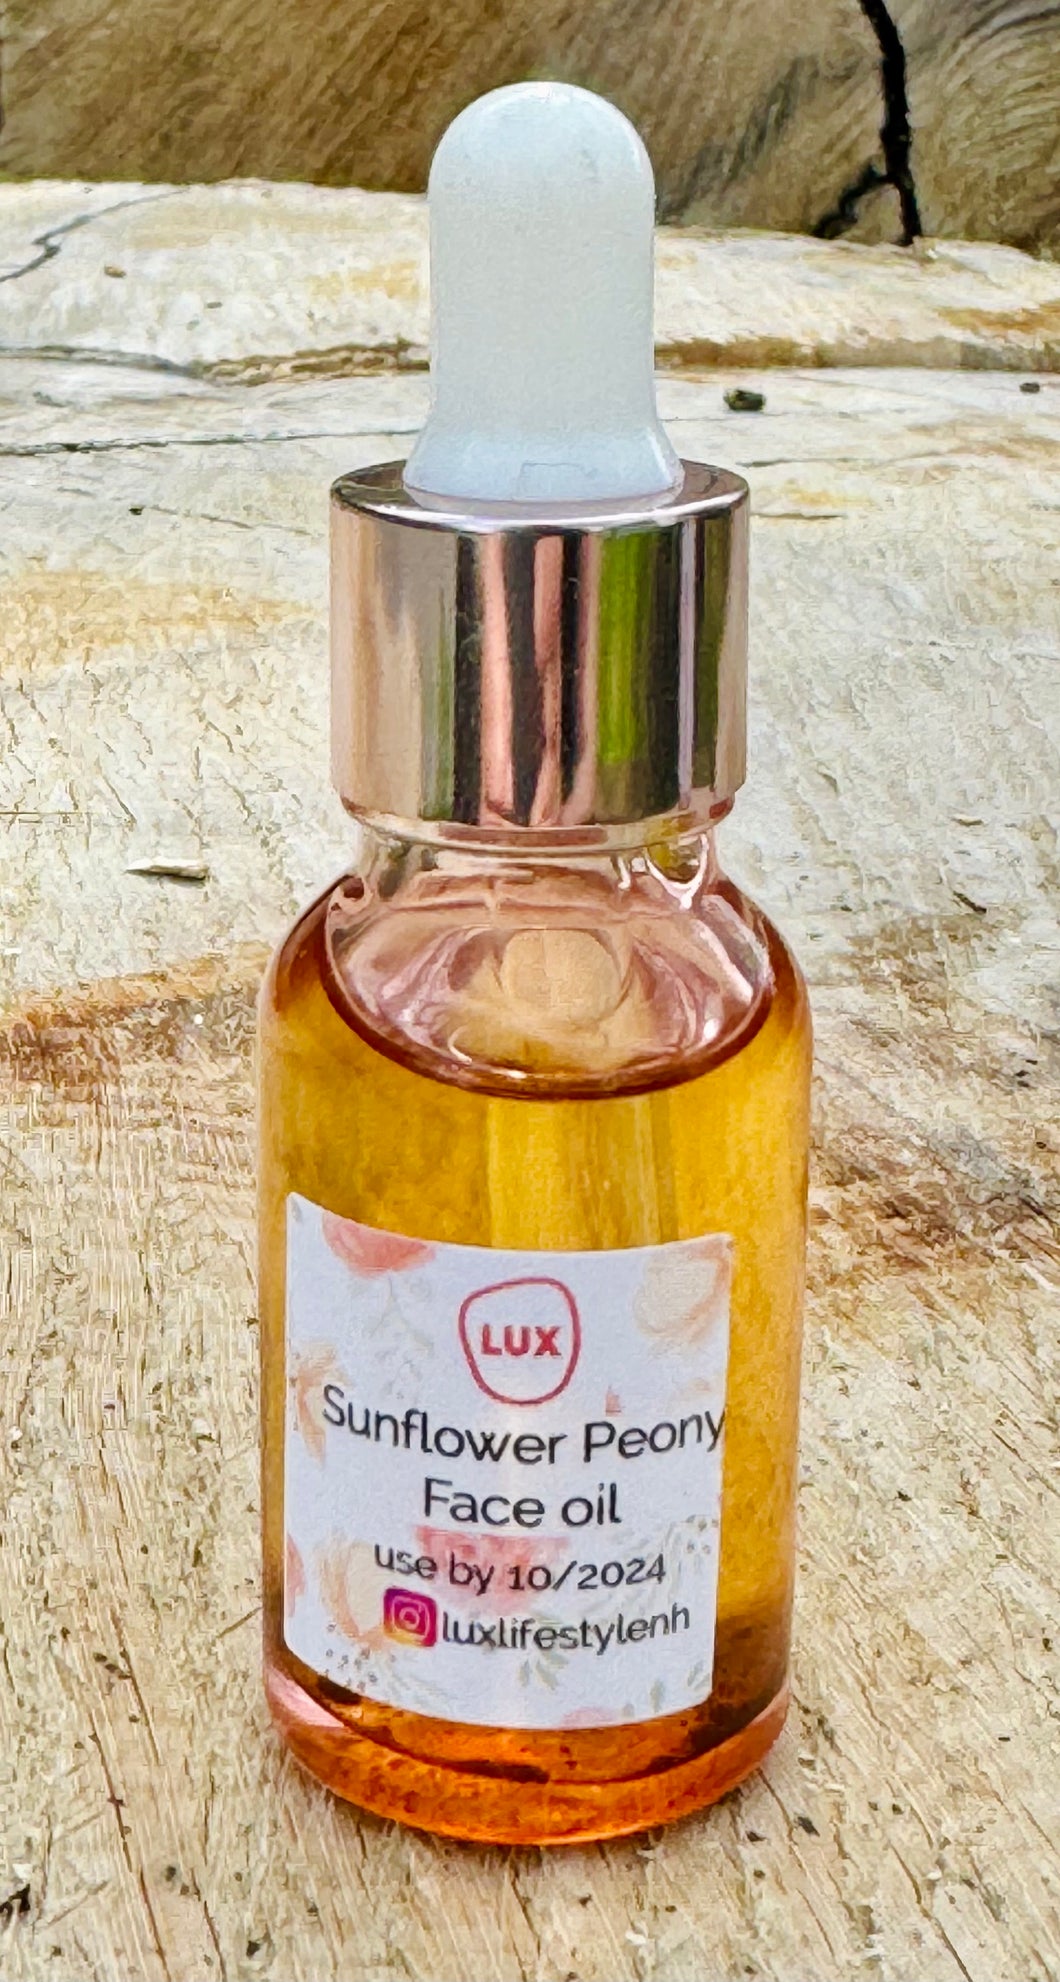 Sunflower Peony Face oil